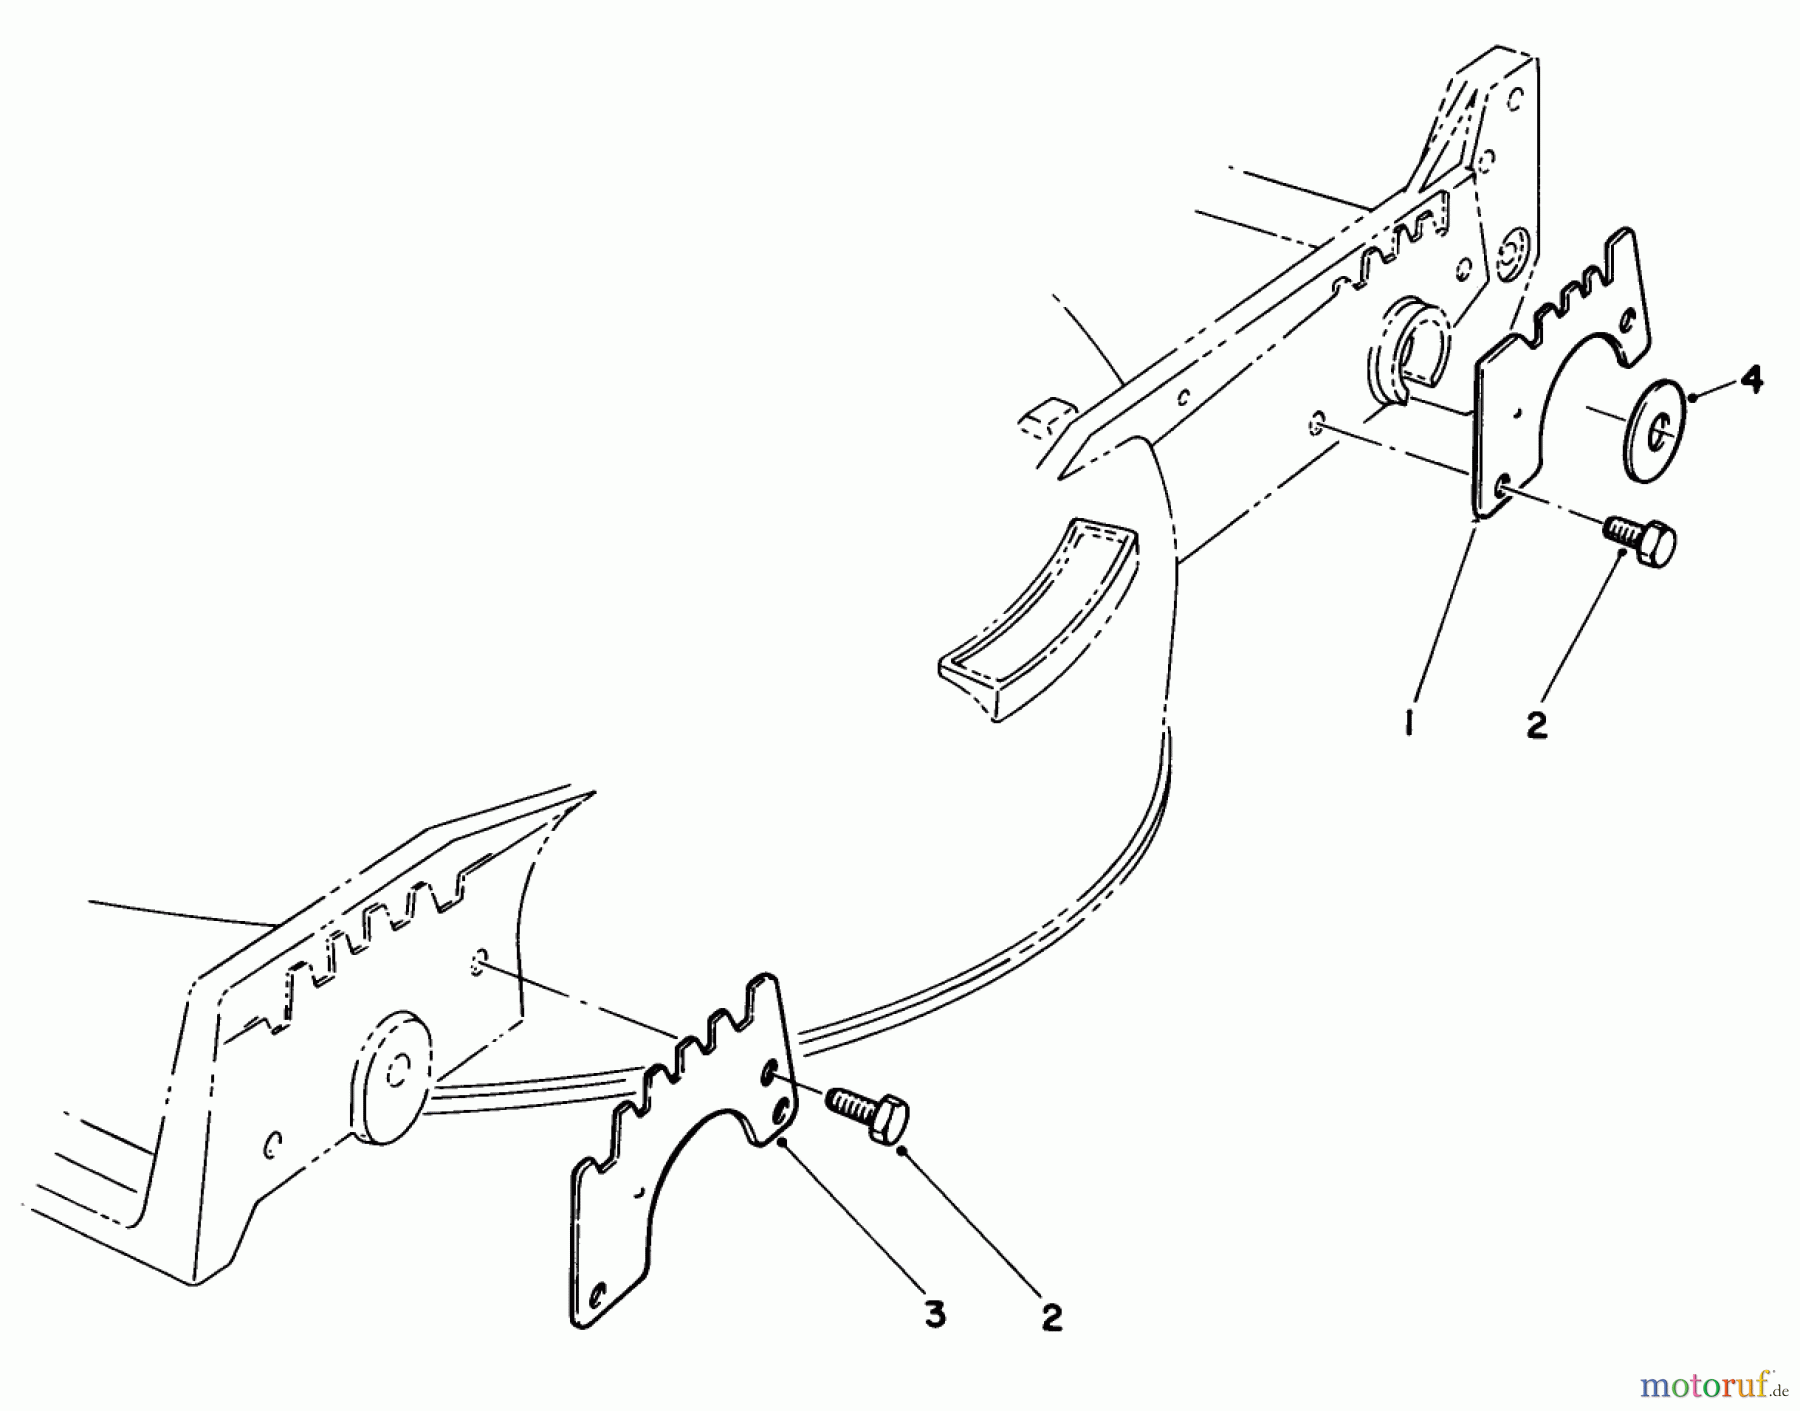  Toro Neu Mowers, Walk-Behind Seite 1 20782C - Toro Lawnmower, 1985 (5000001-5999999) WEAR PLATE KIT NO. 49-4080 (OPTIONAL)